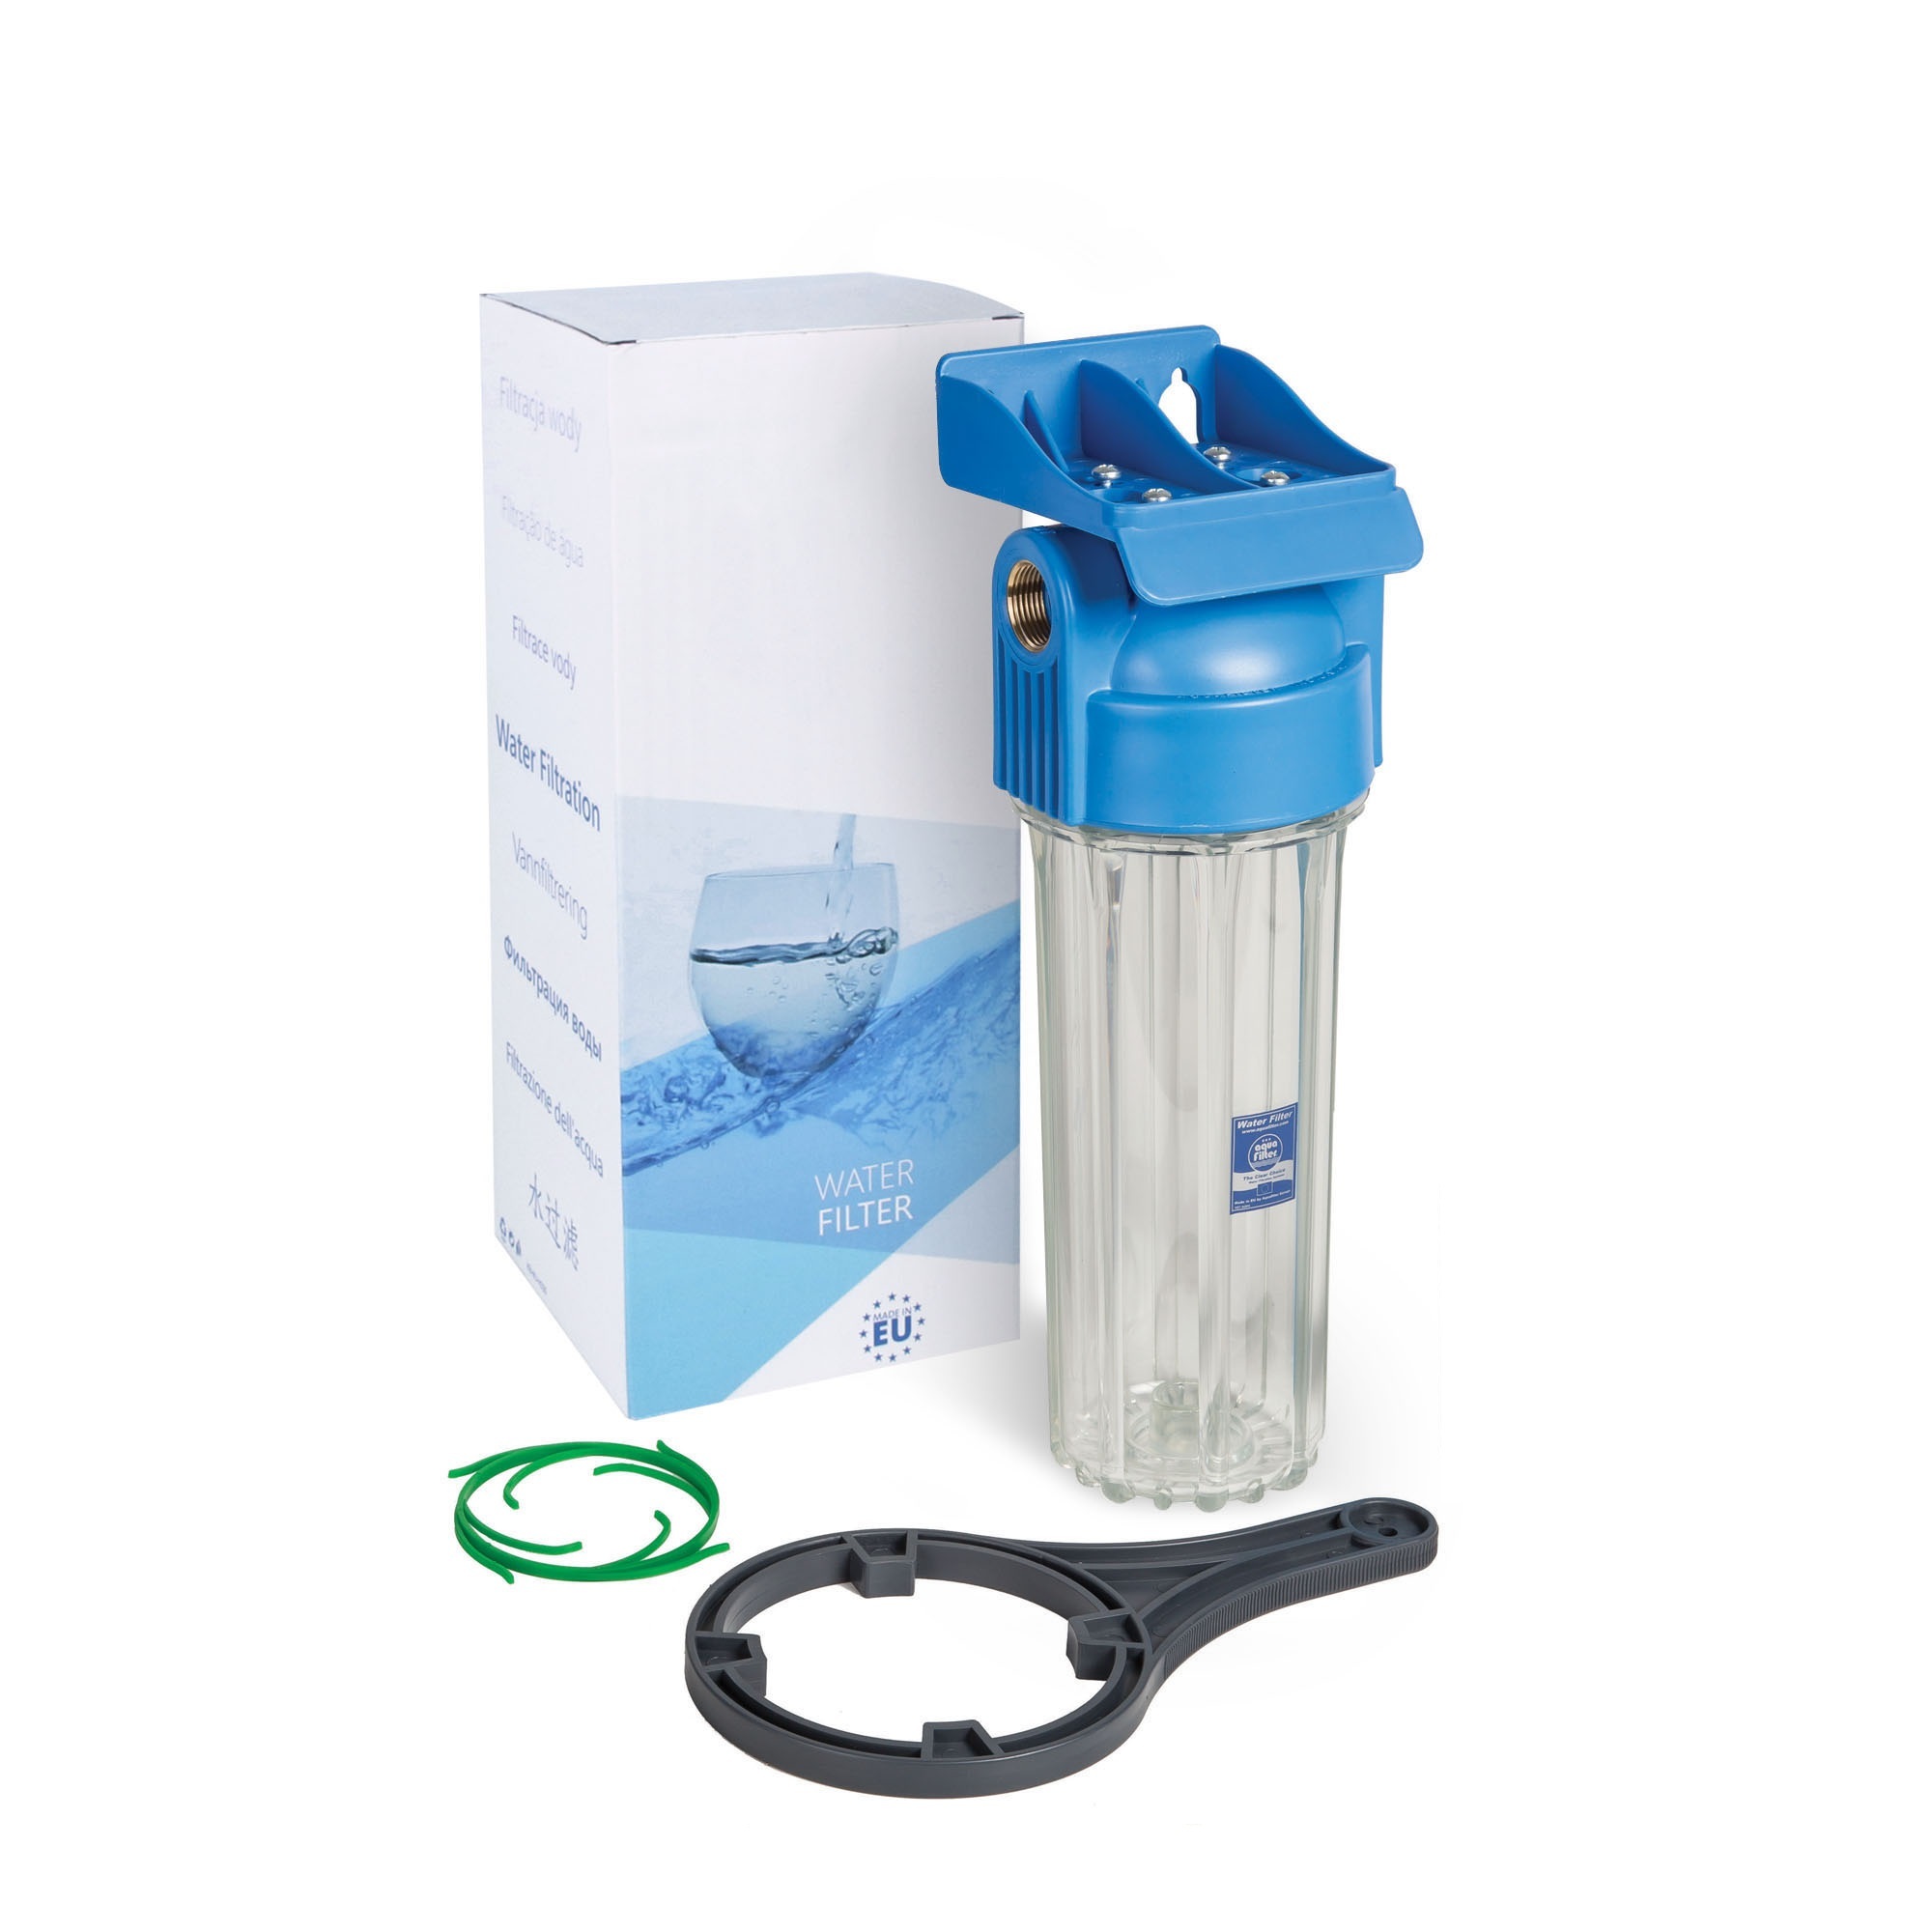 Фильтр для воды 10 sl. Aquafilter 10sl. Фильтр Aquafilter fhpr34-b1. Магистральный фильтр для воды sl10. Фильтр магистральный Aquafilter h10e-fhpr12-e1.